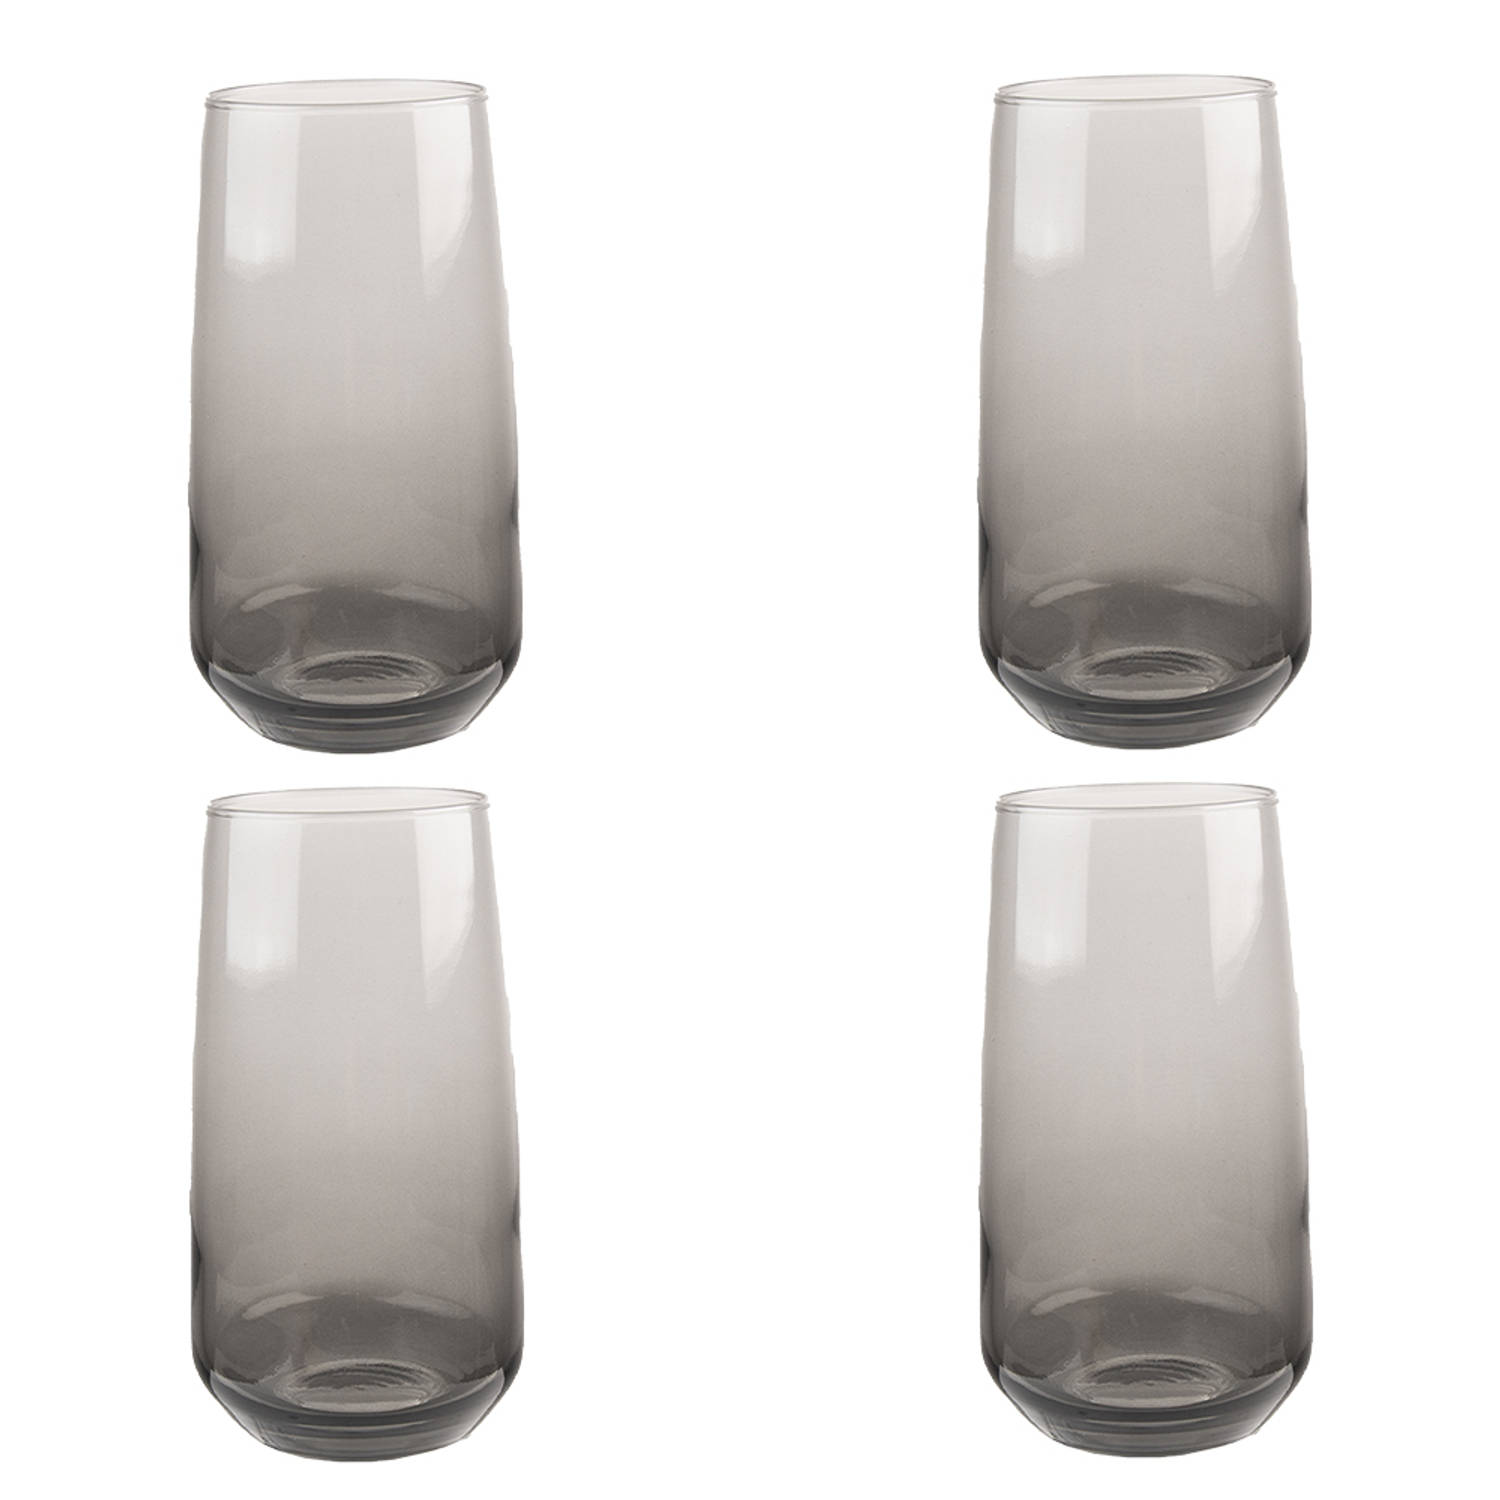 HAES DECO - Waterglas, Drinkglas set van 4 glazen - inhoud glas 430 ml - formaat glas Ø 6x14 cm - Waterglazen, Drinkglazen